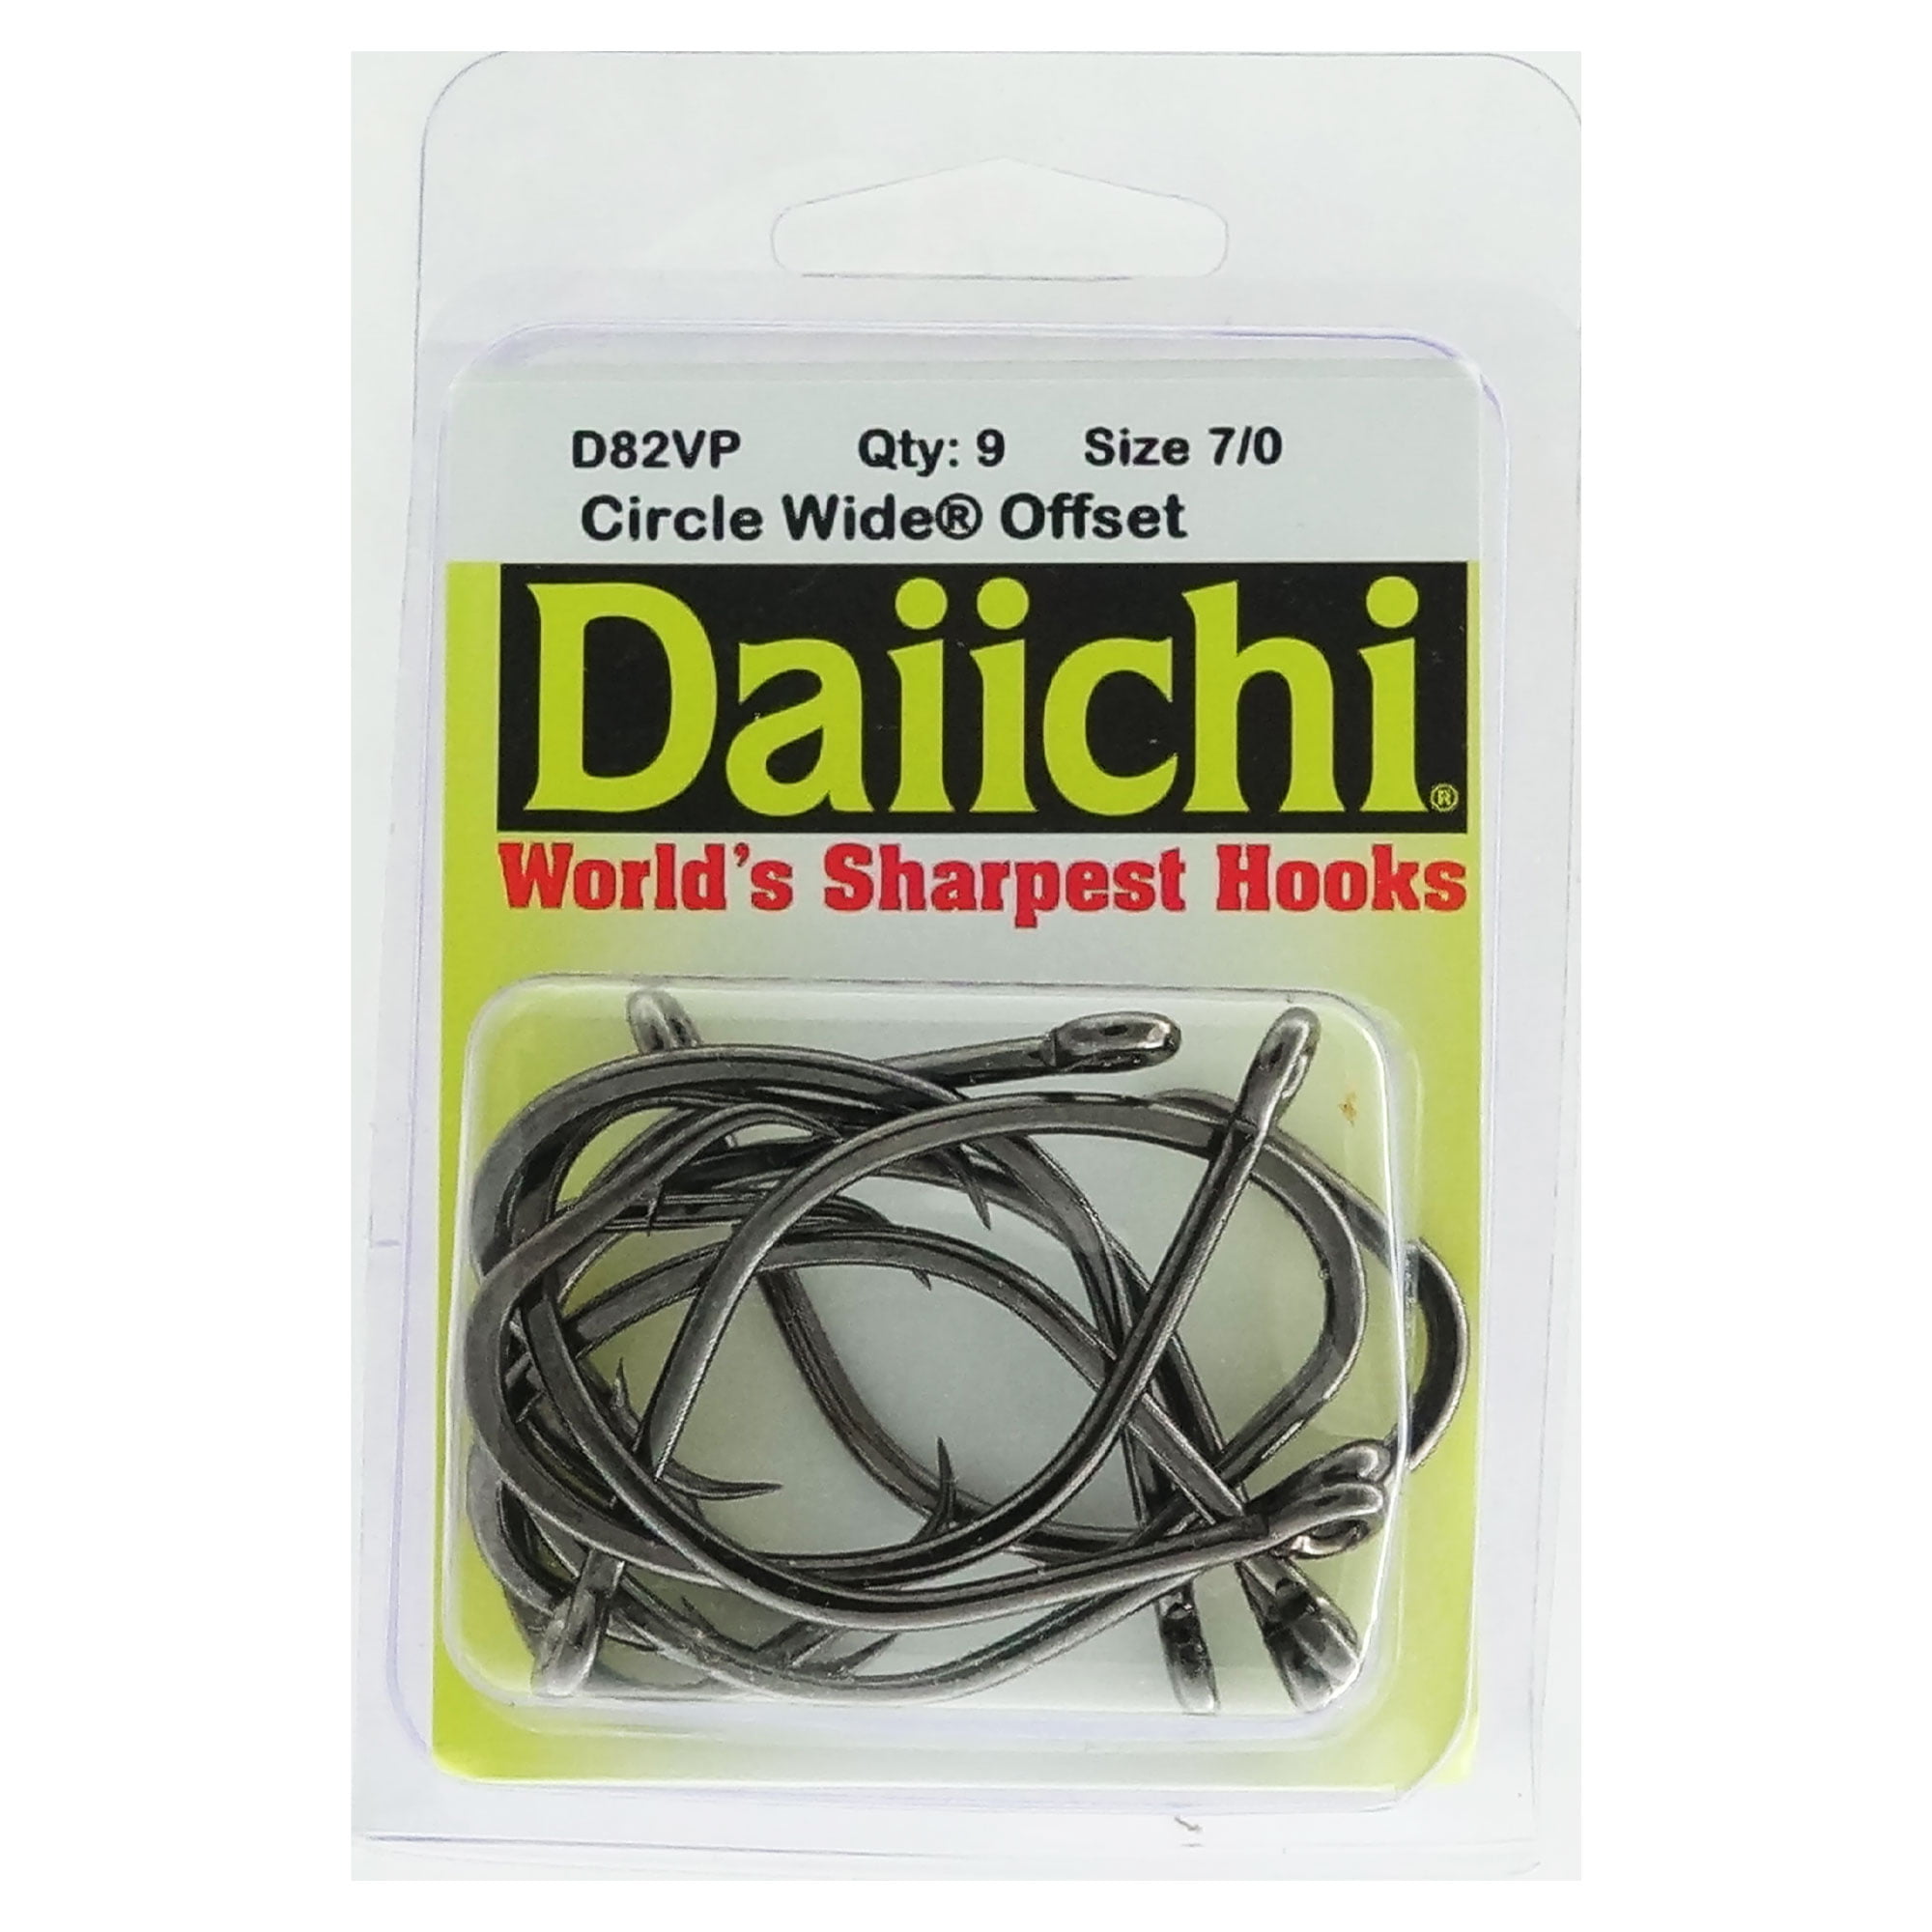 Daiichi Circle Wide Hook Black Nickel Size 7/0 11ct 